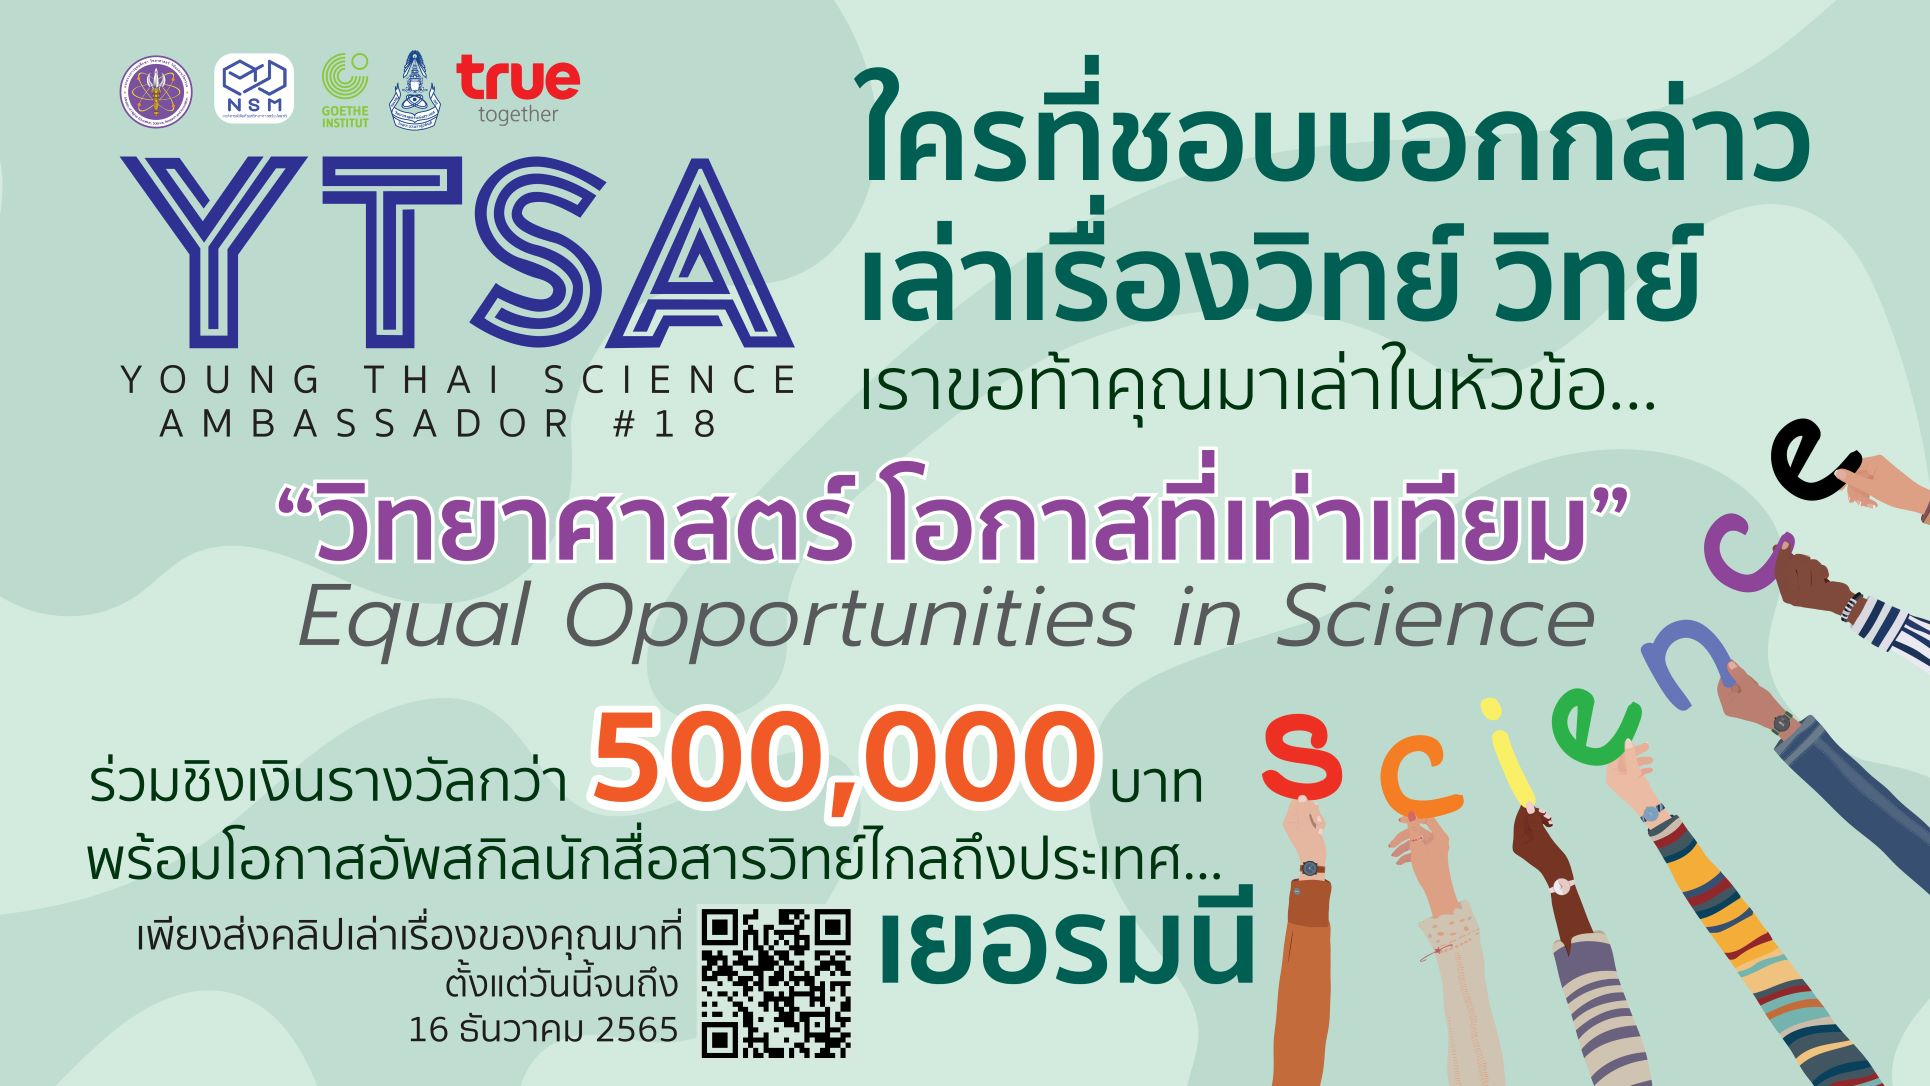 ประชาสัมพันธ์โครงการทูตเยาวชนวิทยาศาสตร์ไทย ครั้งที่ 18